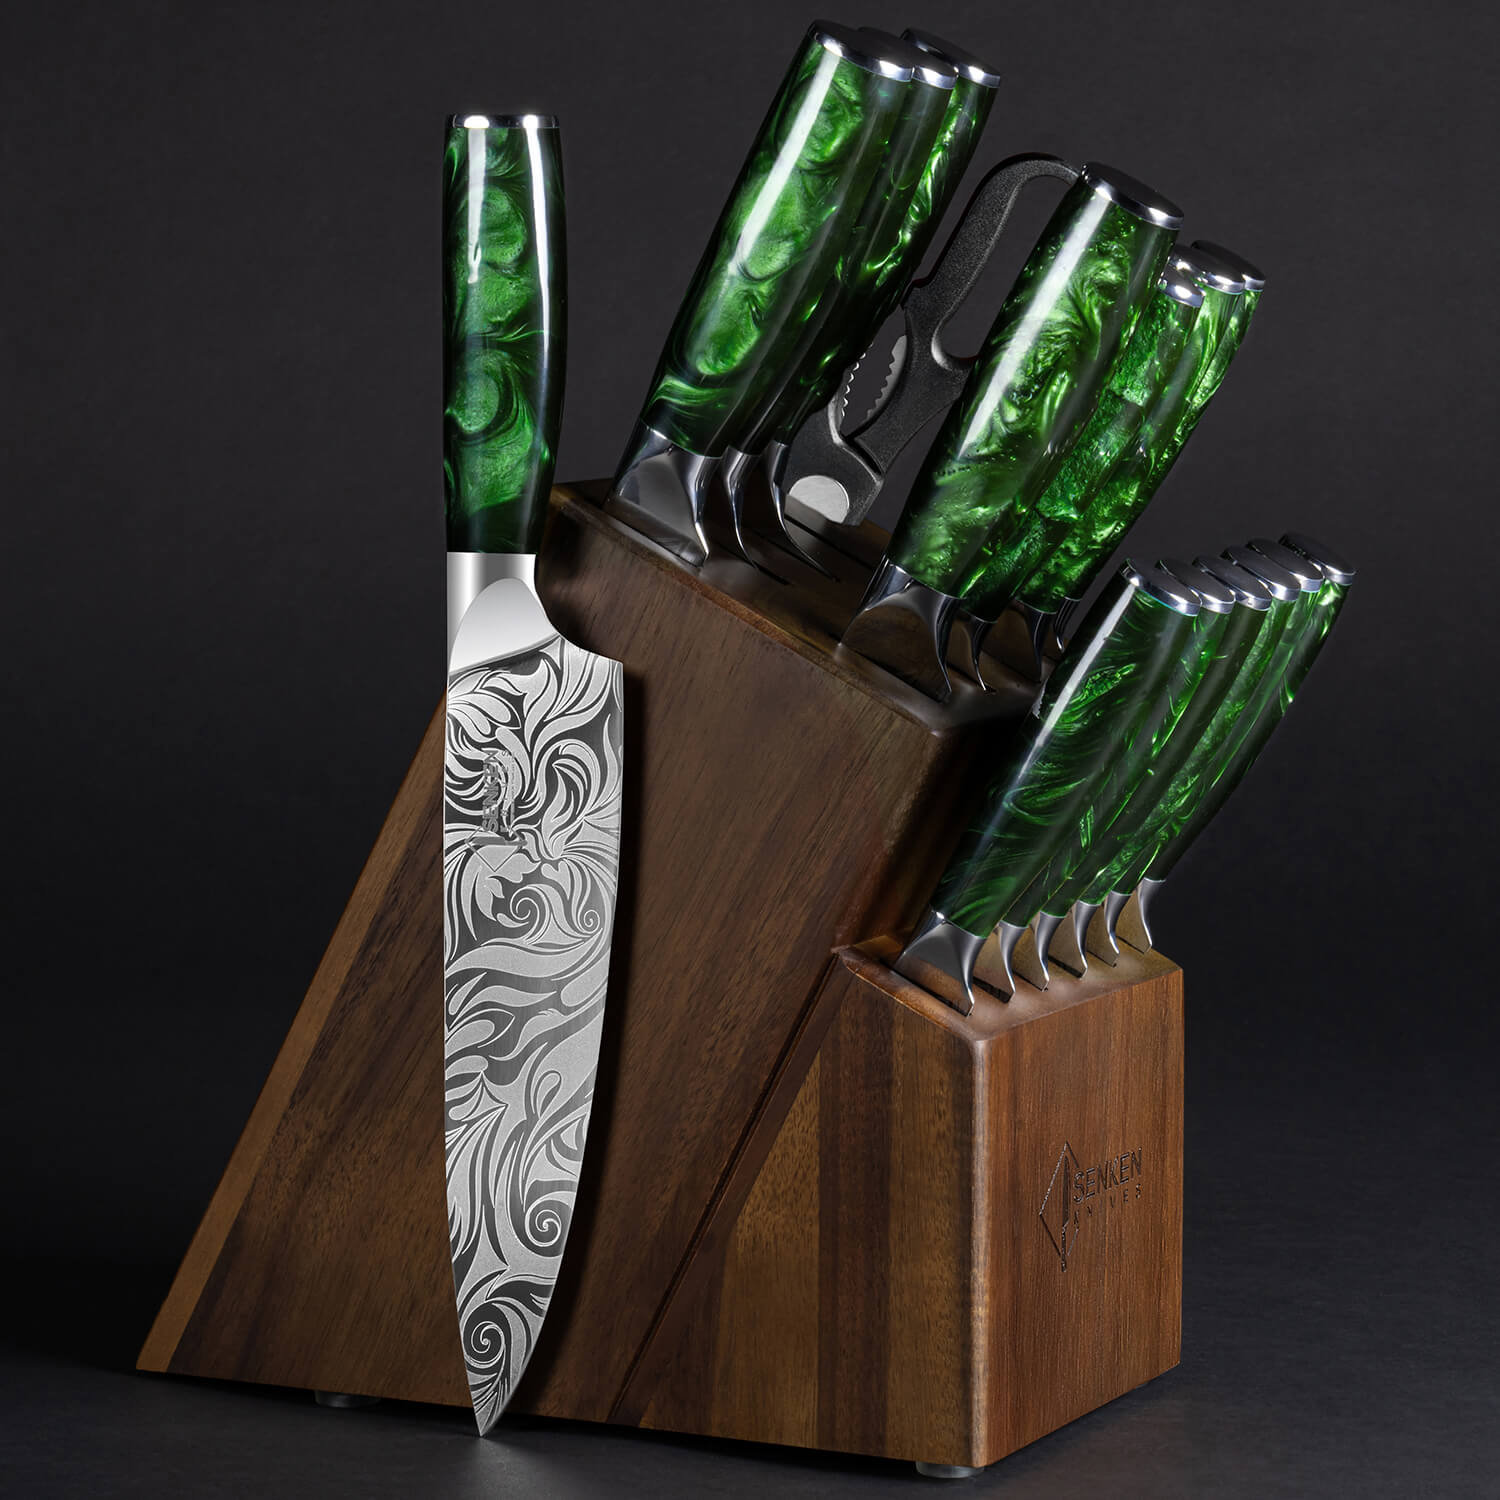 https://assets.wfcdn.com/im/36680818/compr-r85/2518/251855617/senken-knives-16-piece-high-carbon-stainless-steel-knife-block-set.jpg